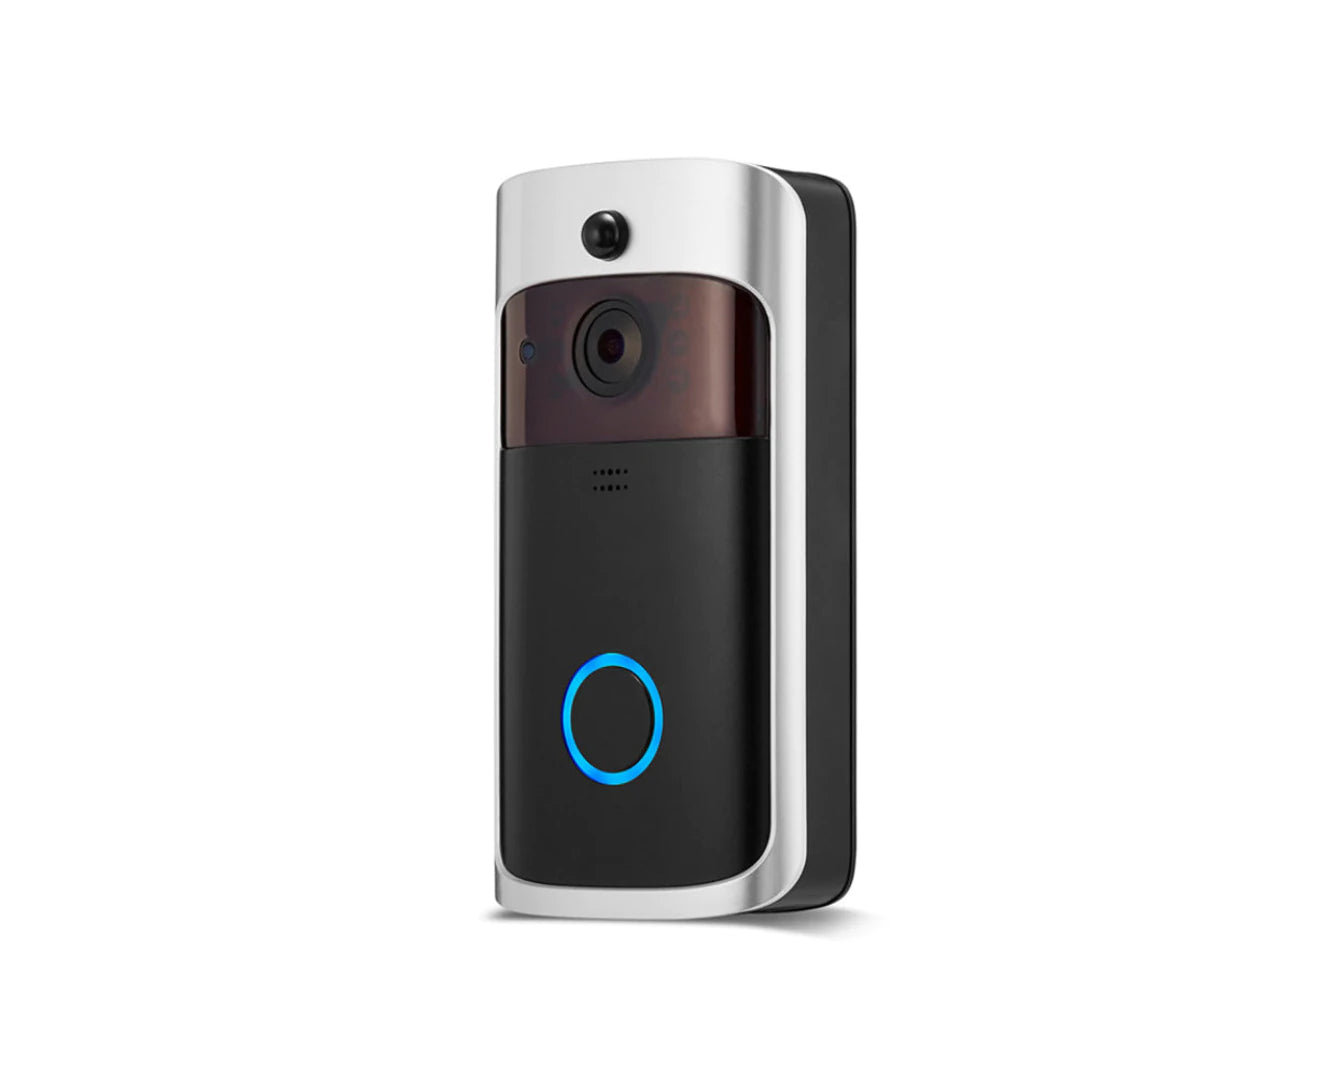 Wi-Fi Smart Security Video Doorbell